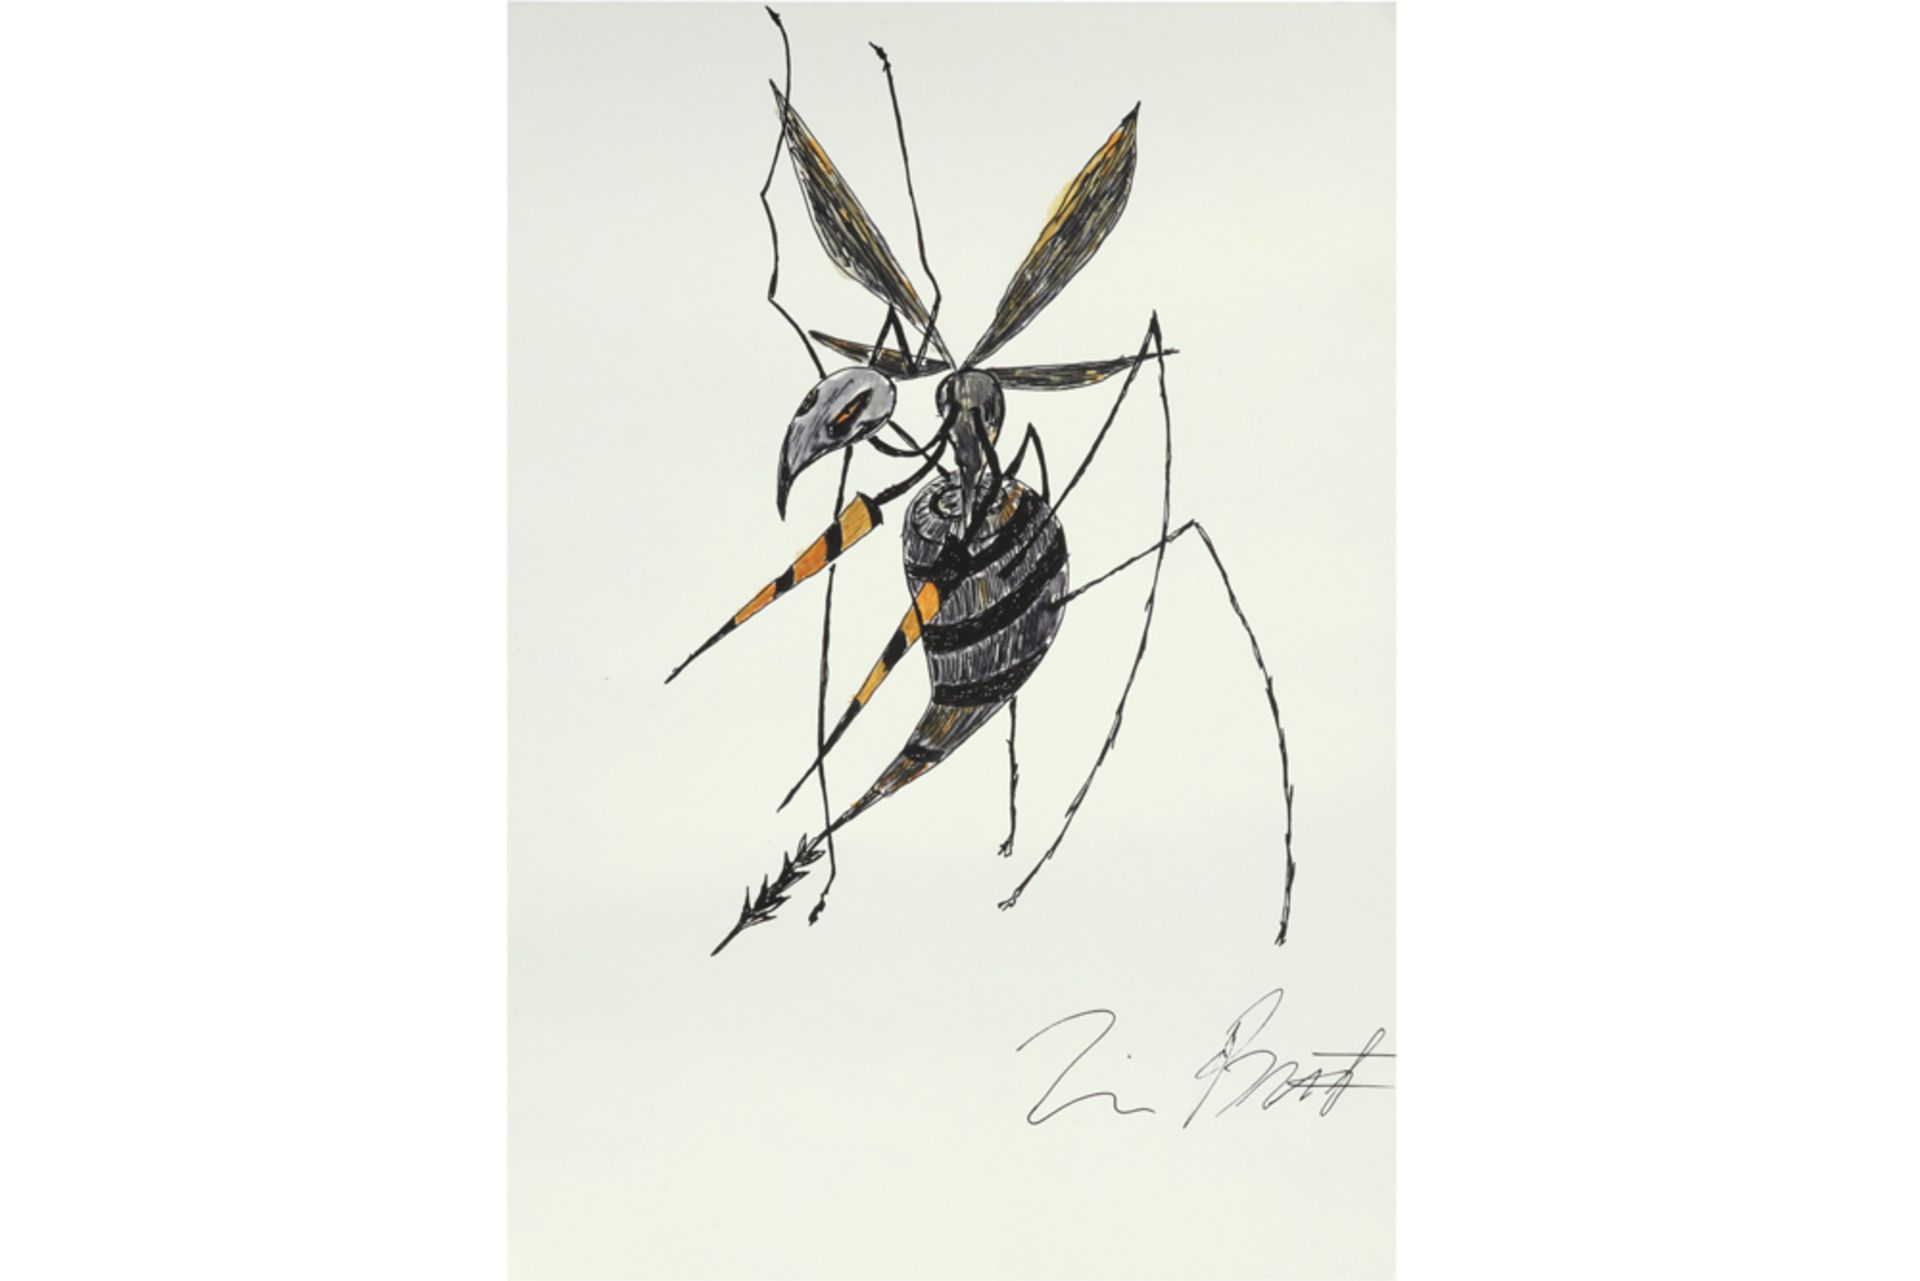 Tim Burton signed "Wasp" drawing || BURTON TIM (° 1958) tekening : "Wasp" - 29,6 x 20,9 getekend